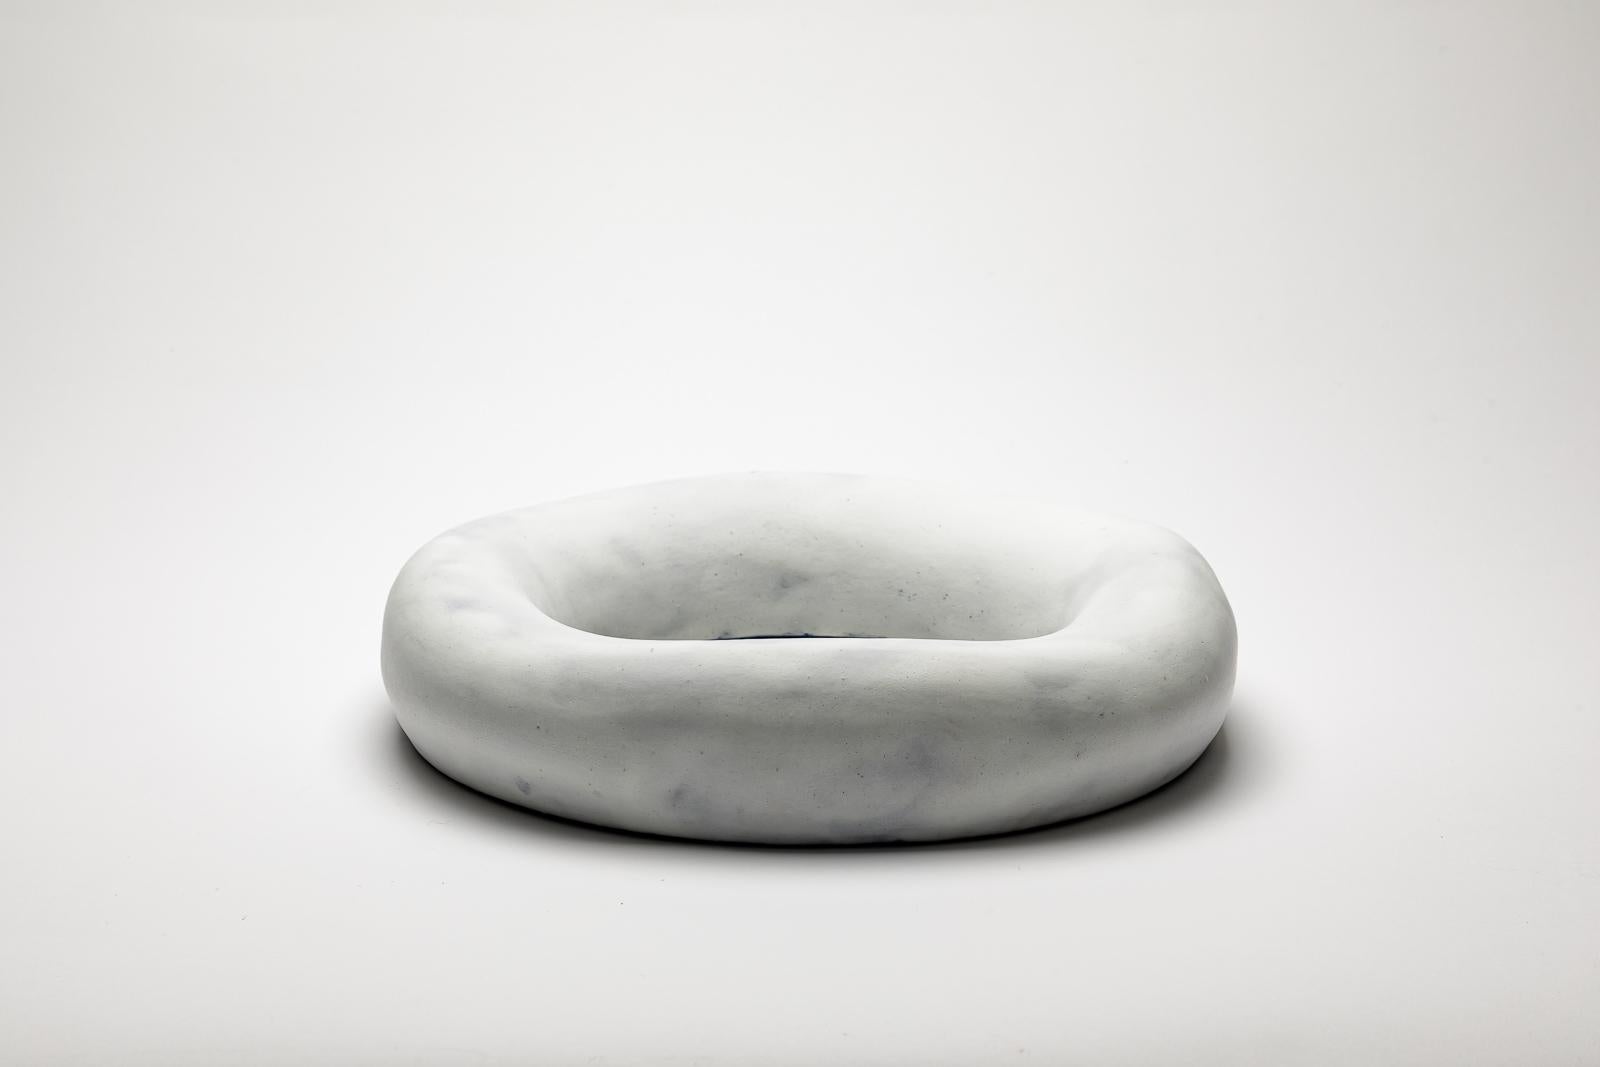 Weiß glasierter Keramikspiegel von Mia Jensen.
Künstlersignatur unter dem Sockel. CIRCA 2023-2024.
H : 2,4' x 11,4' Zoll.